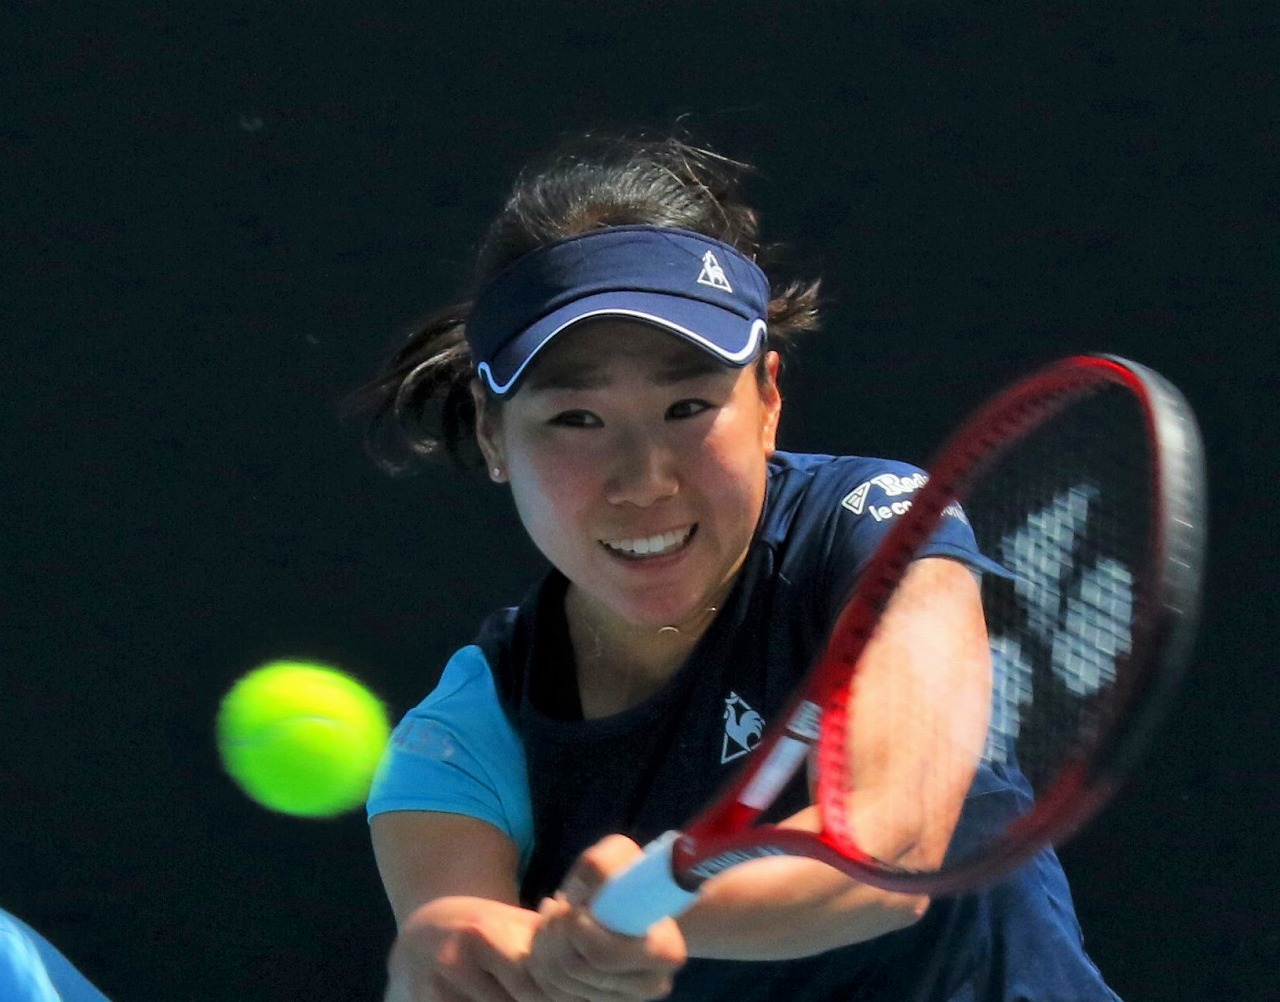 大坂なおみは15歳天才少女 西岡良仁はジョコビッチと対戦 全豪オープン Tennis Jp テニス ドット ジェイピー